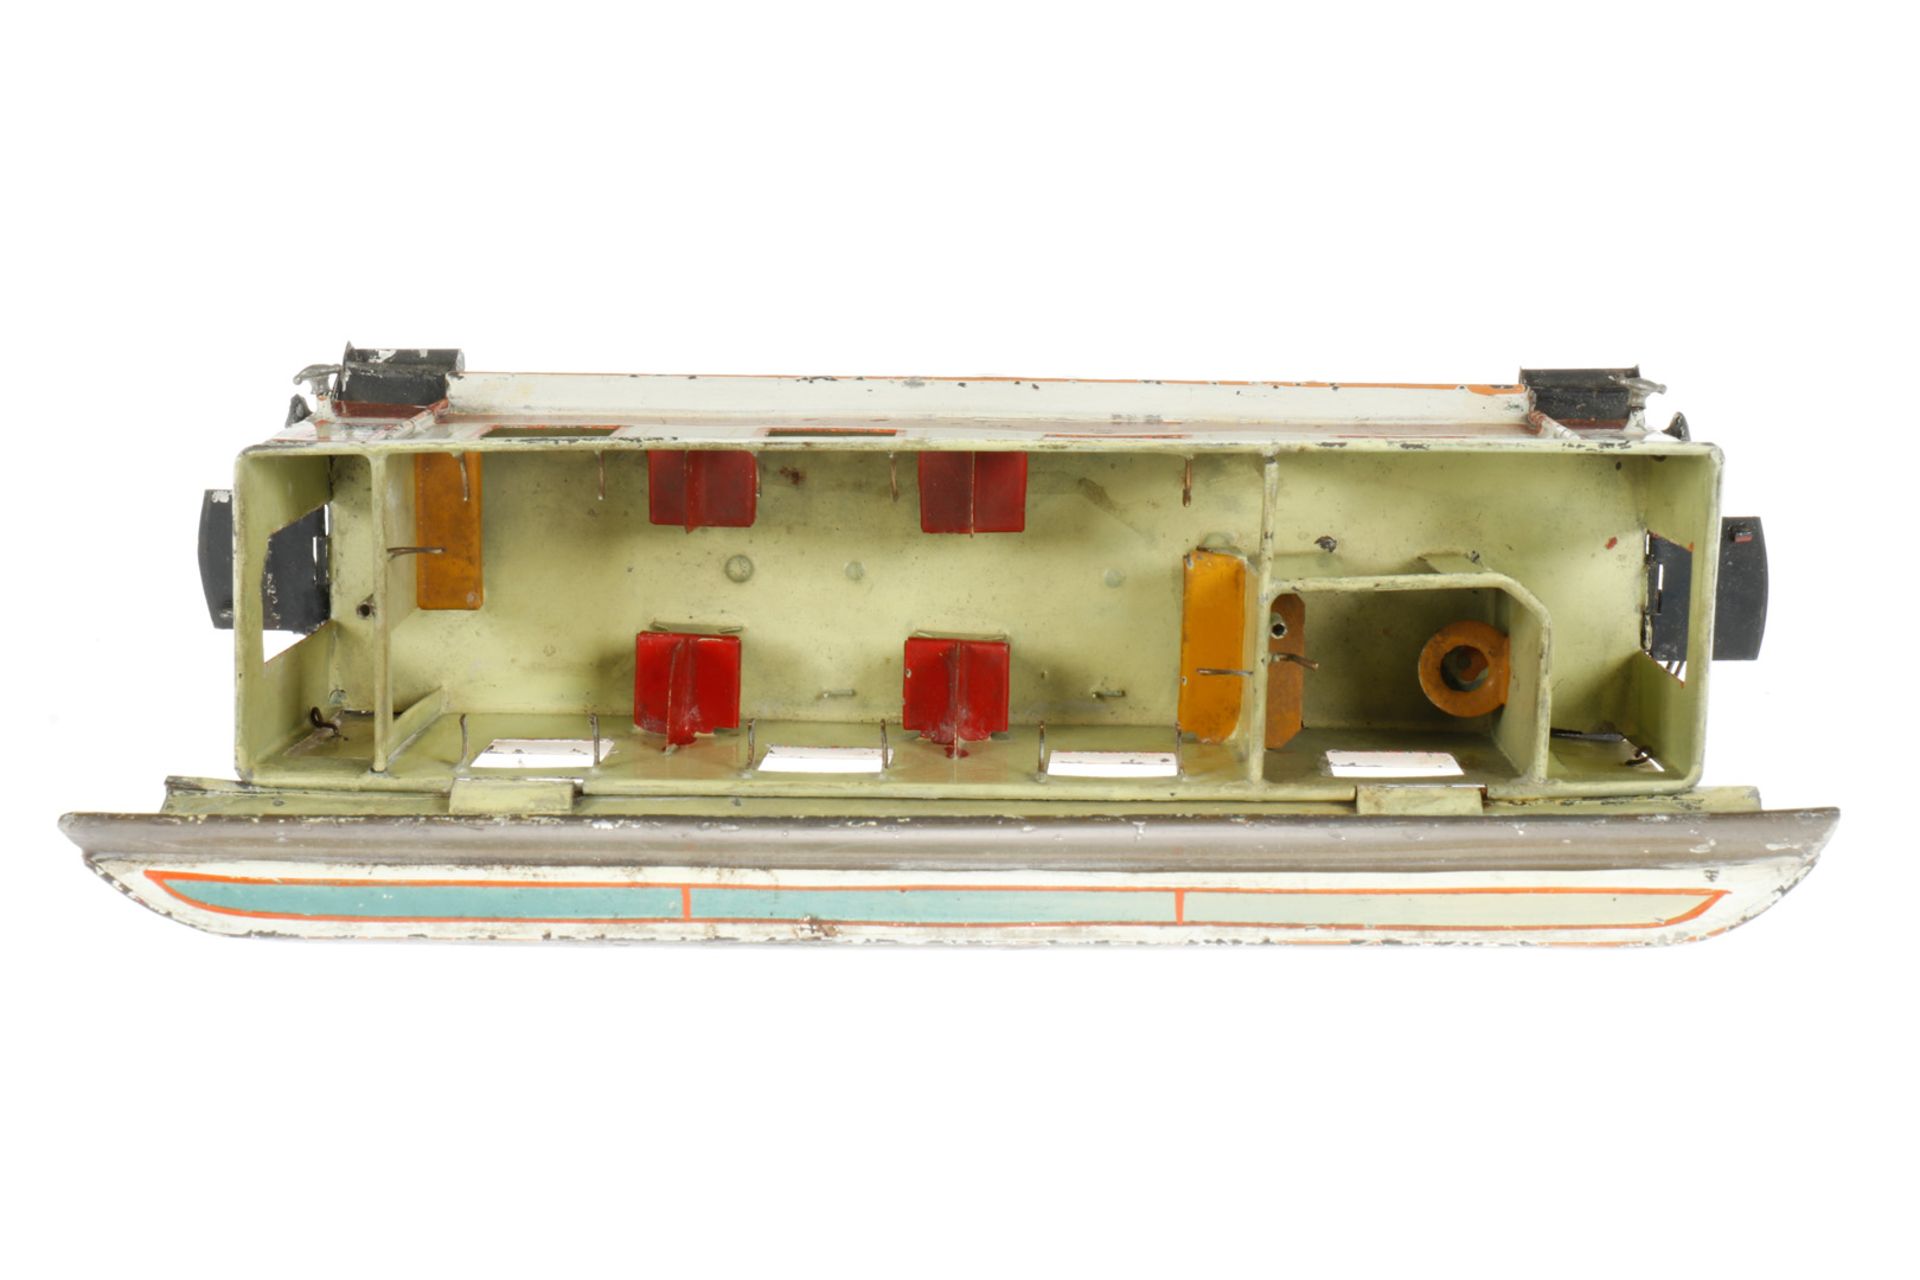 Märklin Schlafwagen “40“ 1843 K, S 1, uralt, braun/weiß, HL, mit Inneneinrichtung (Betten und - Bild 6 aus 6